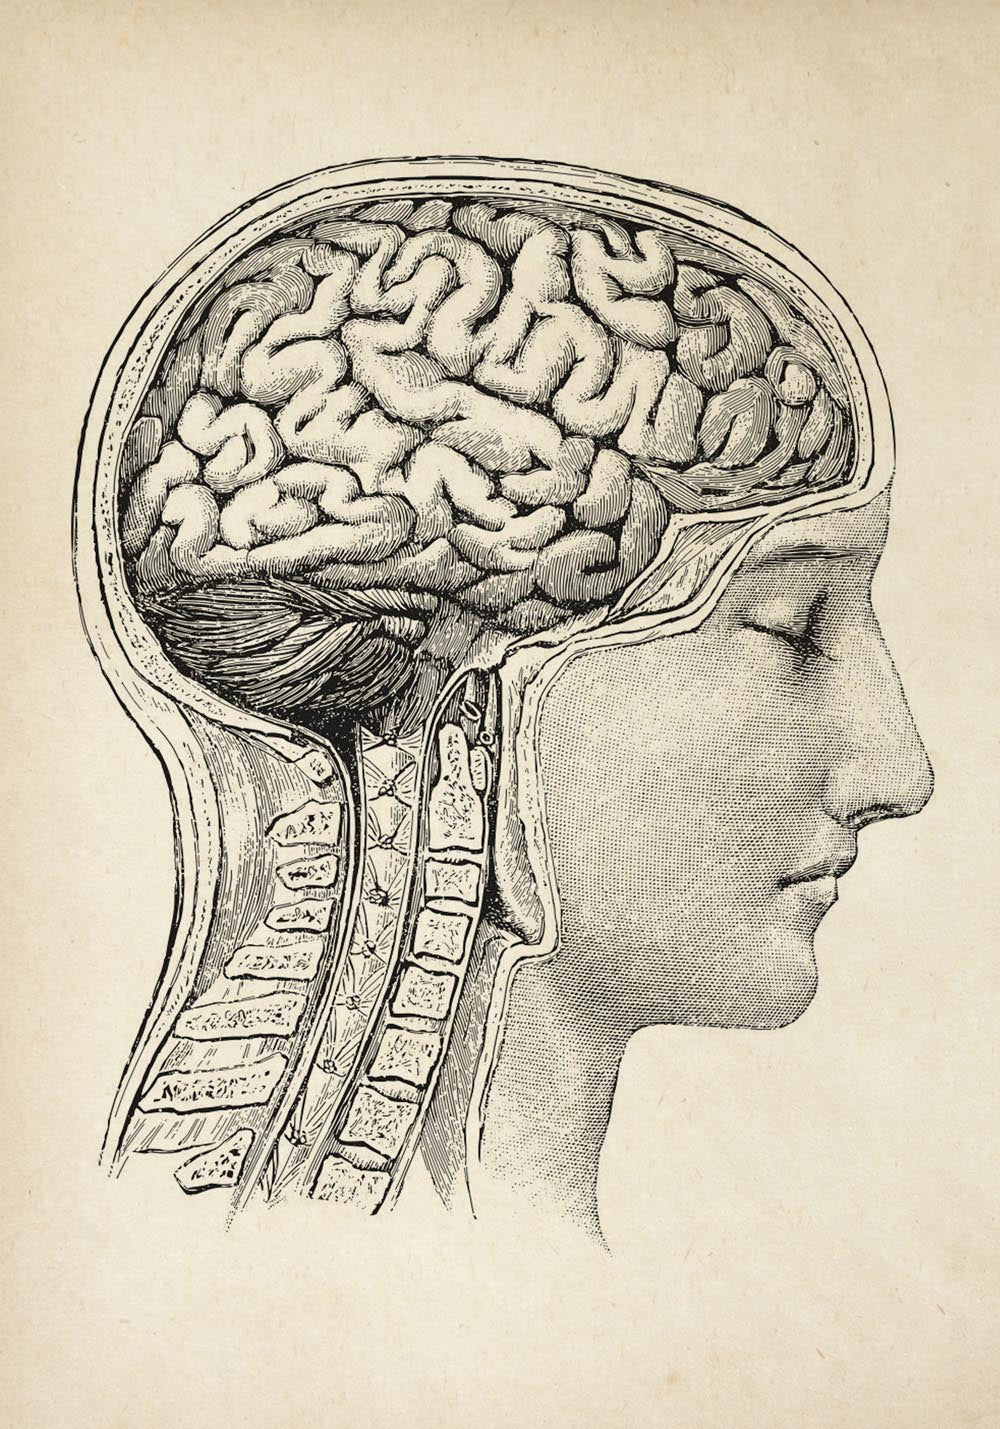 Vintage Anatomy Posters "Head" Set of 3 Prints